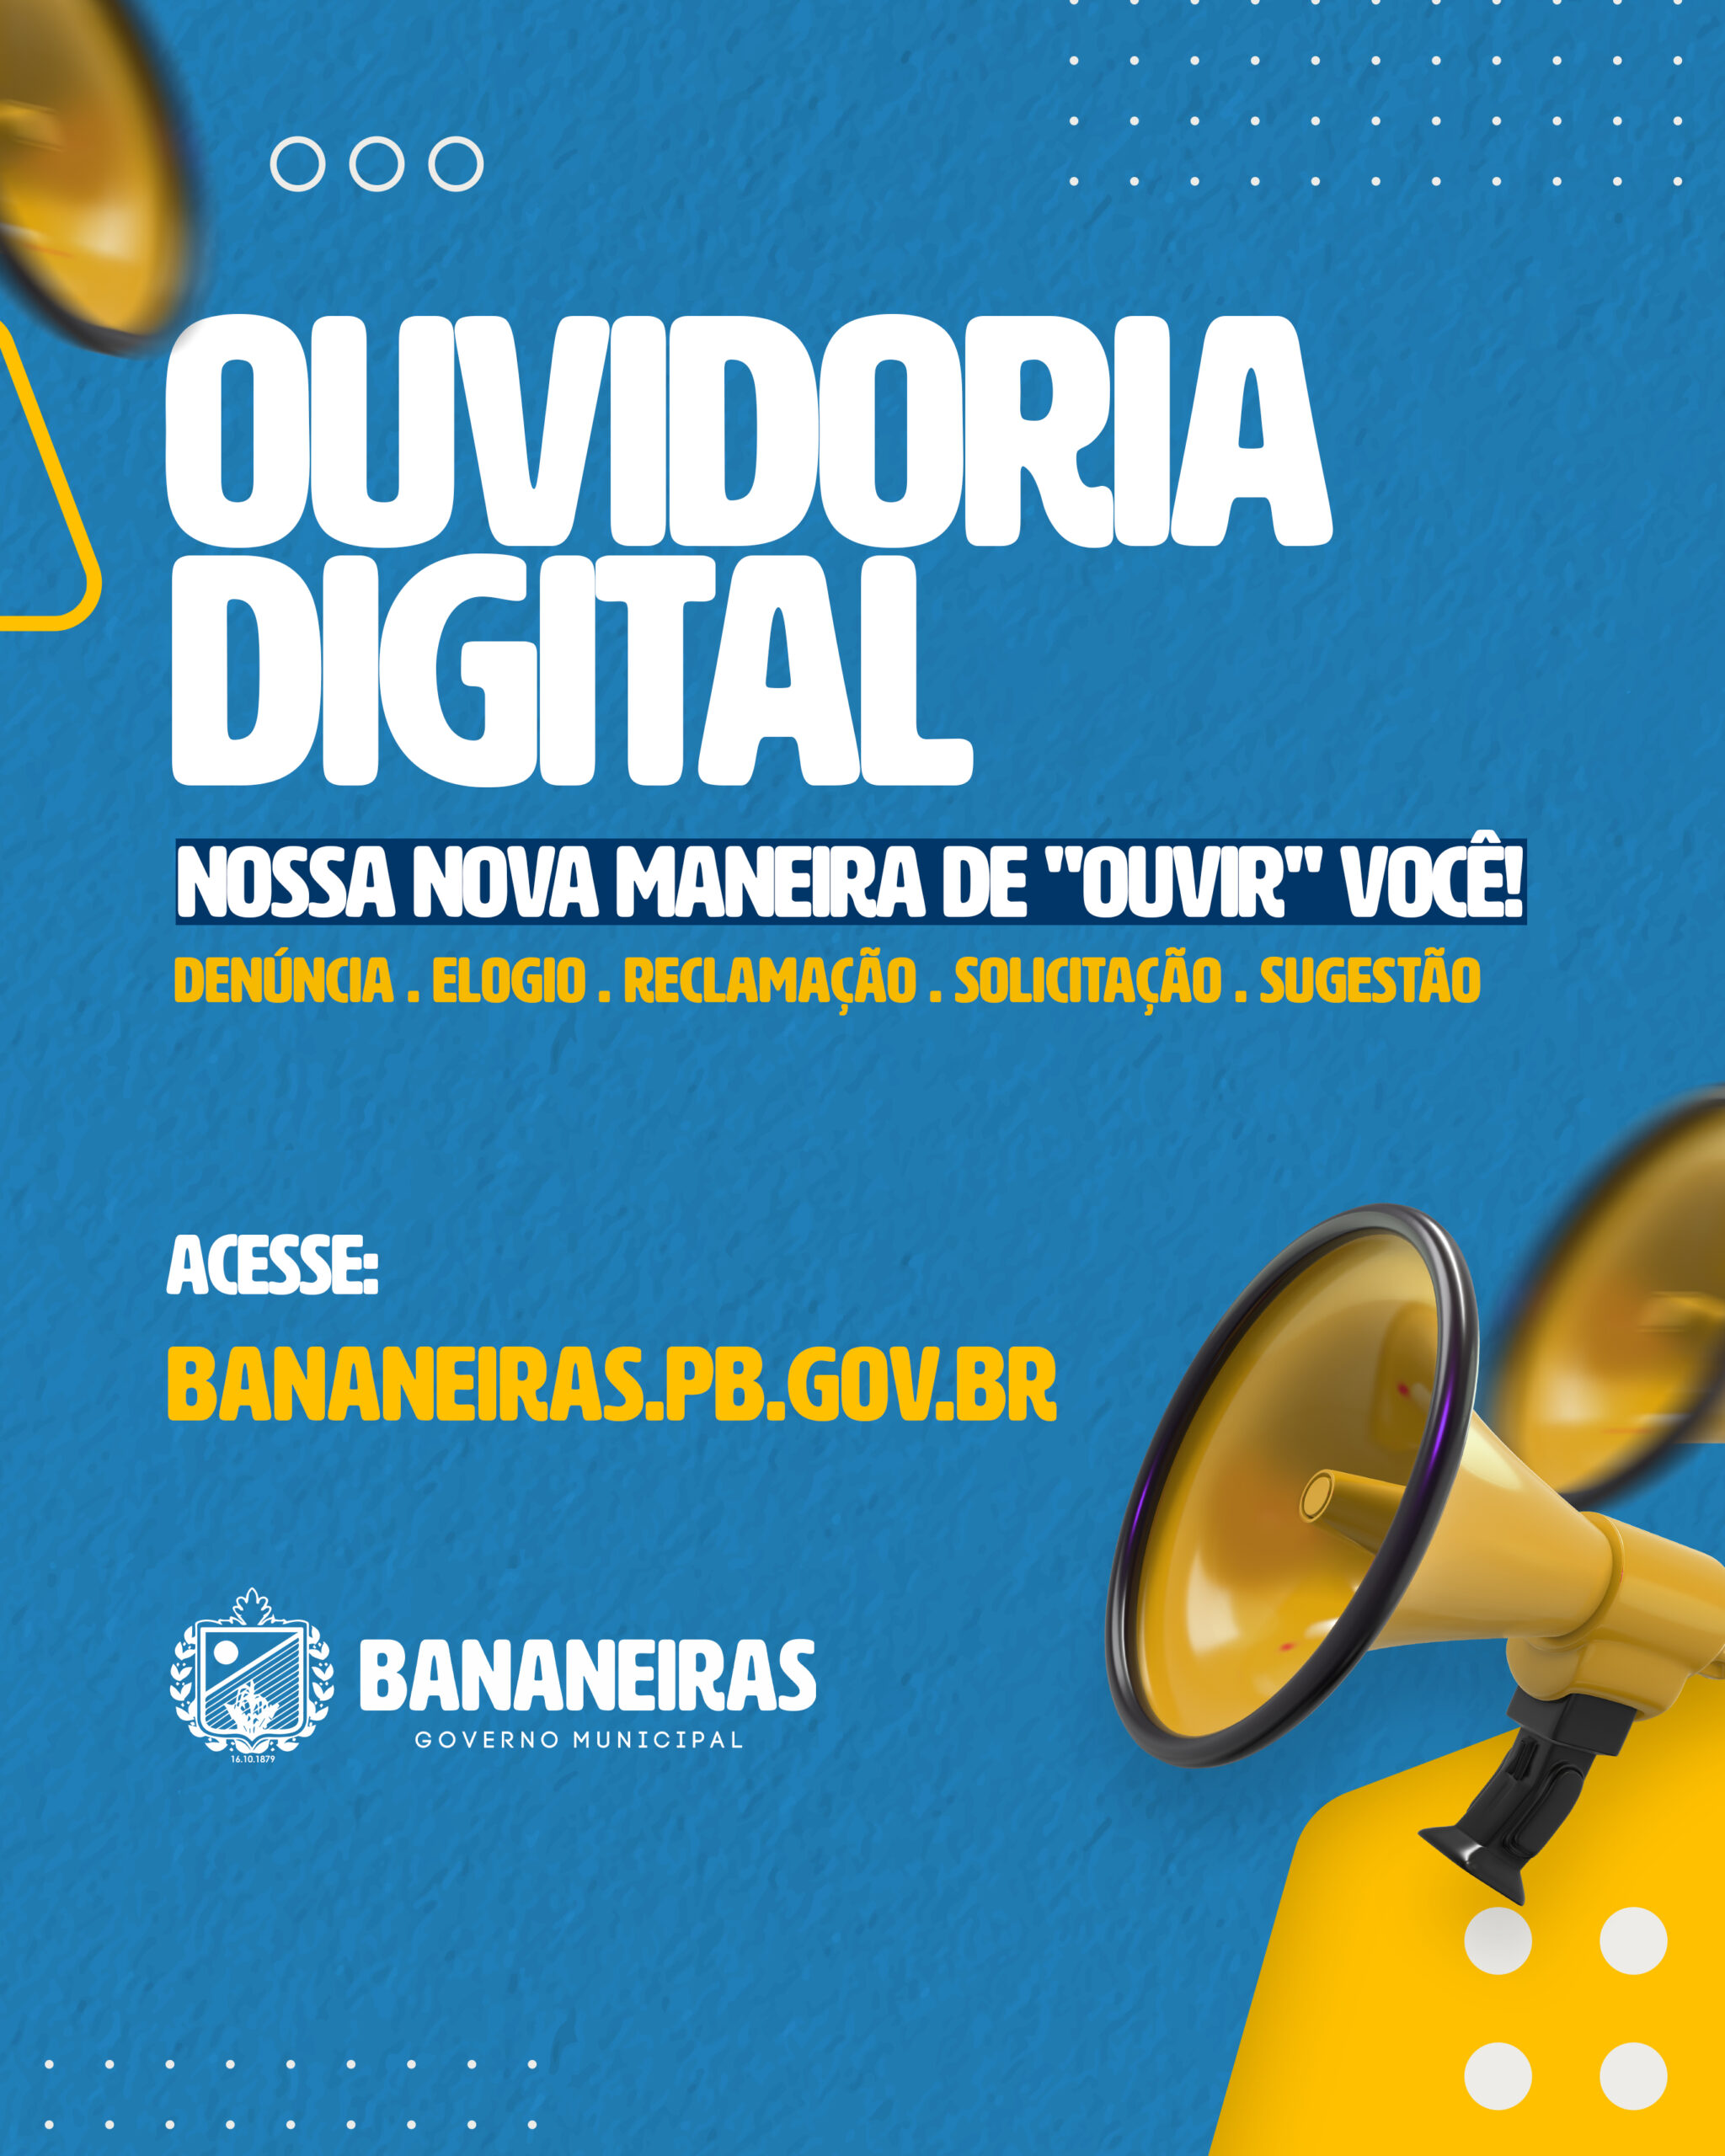 Prefeito Matheus Bezerra lançou a Ouvidoria Digital e Governo Municipal celebra mais transparência